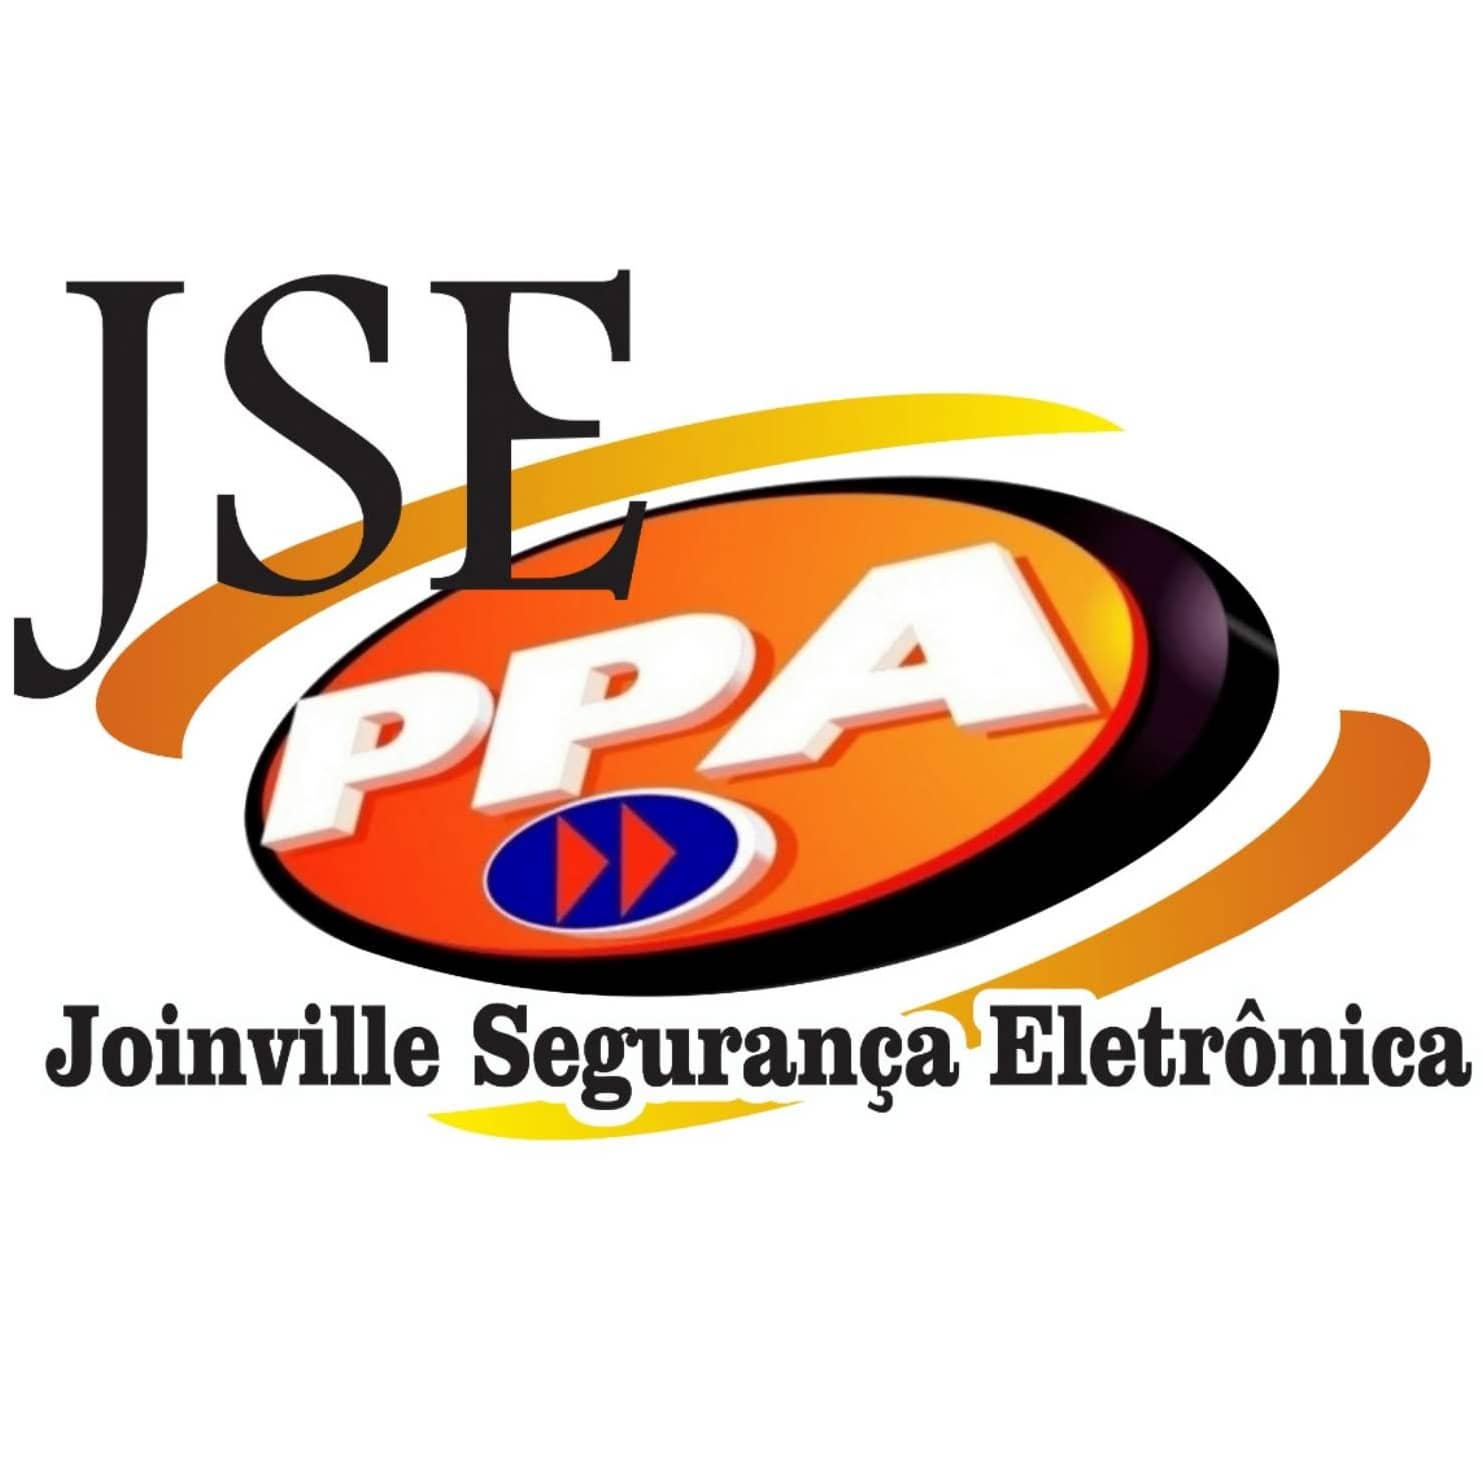 Joinville Segurança Eletrônica